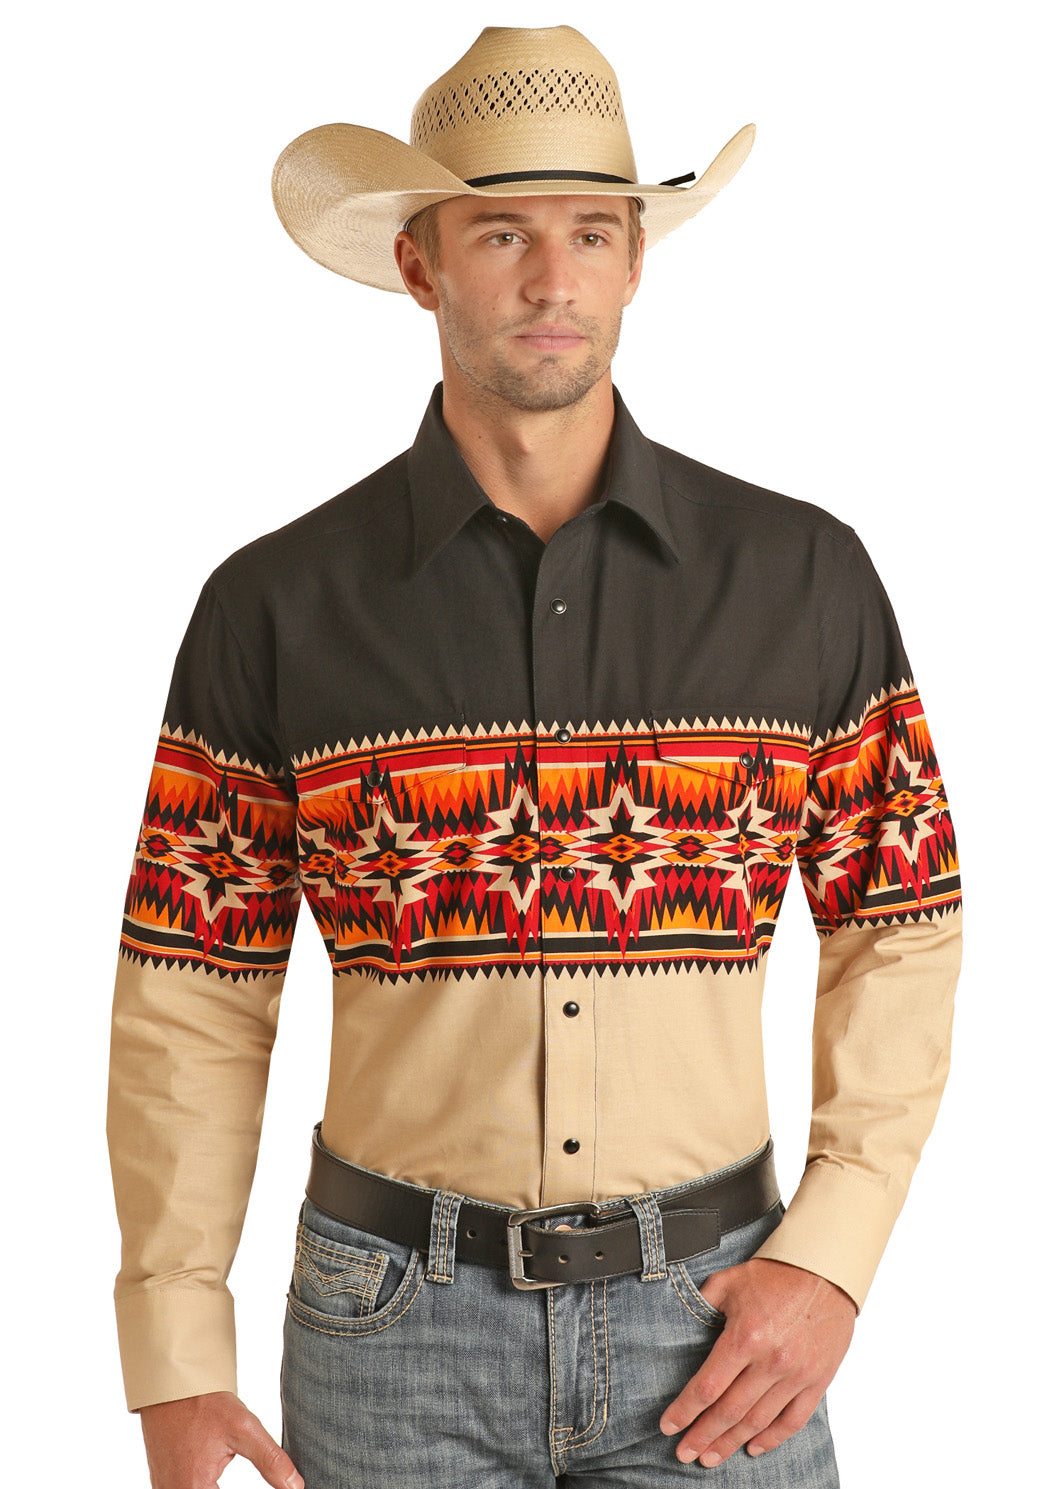 Short Sleeved Shirts : SouthWestern Outdoorsman